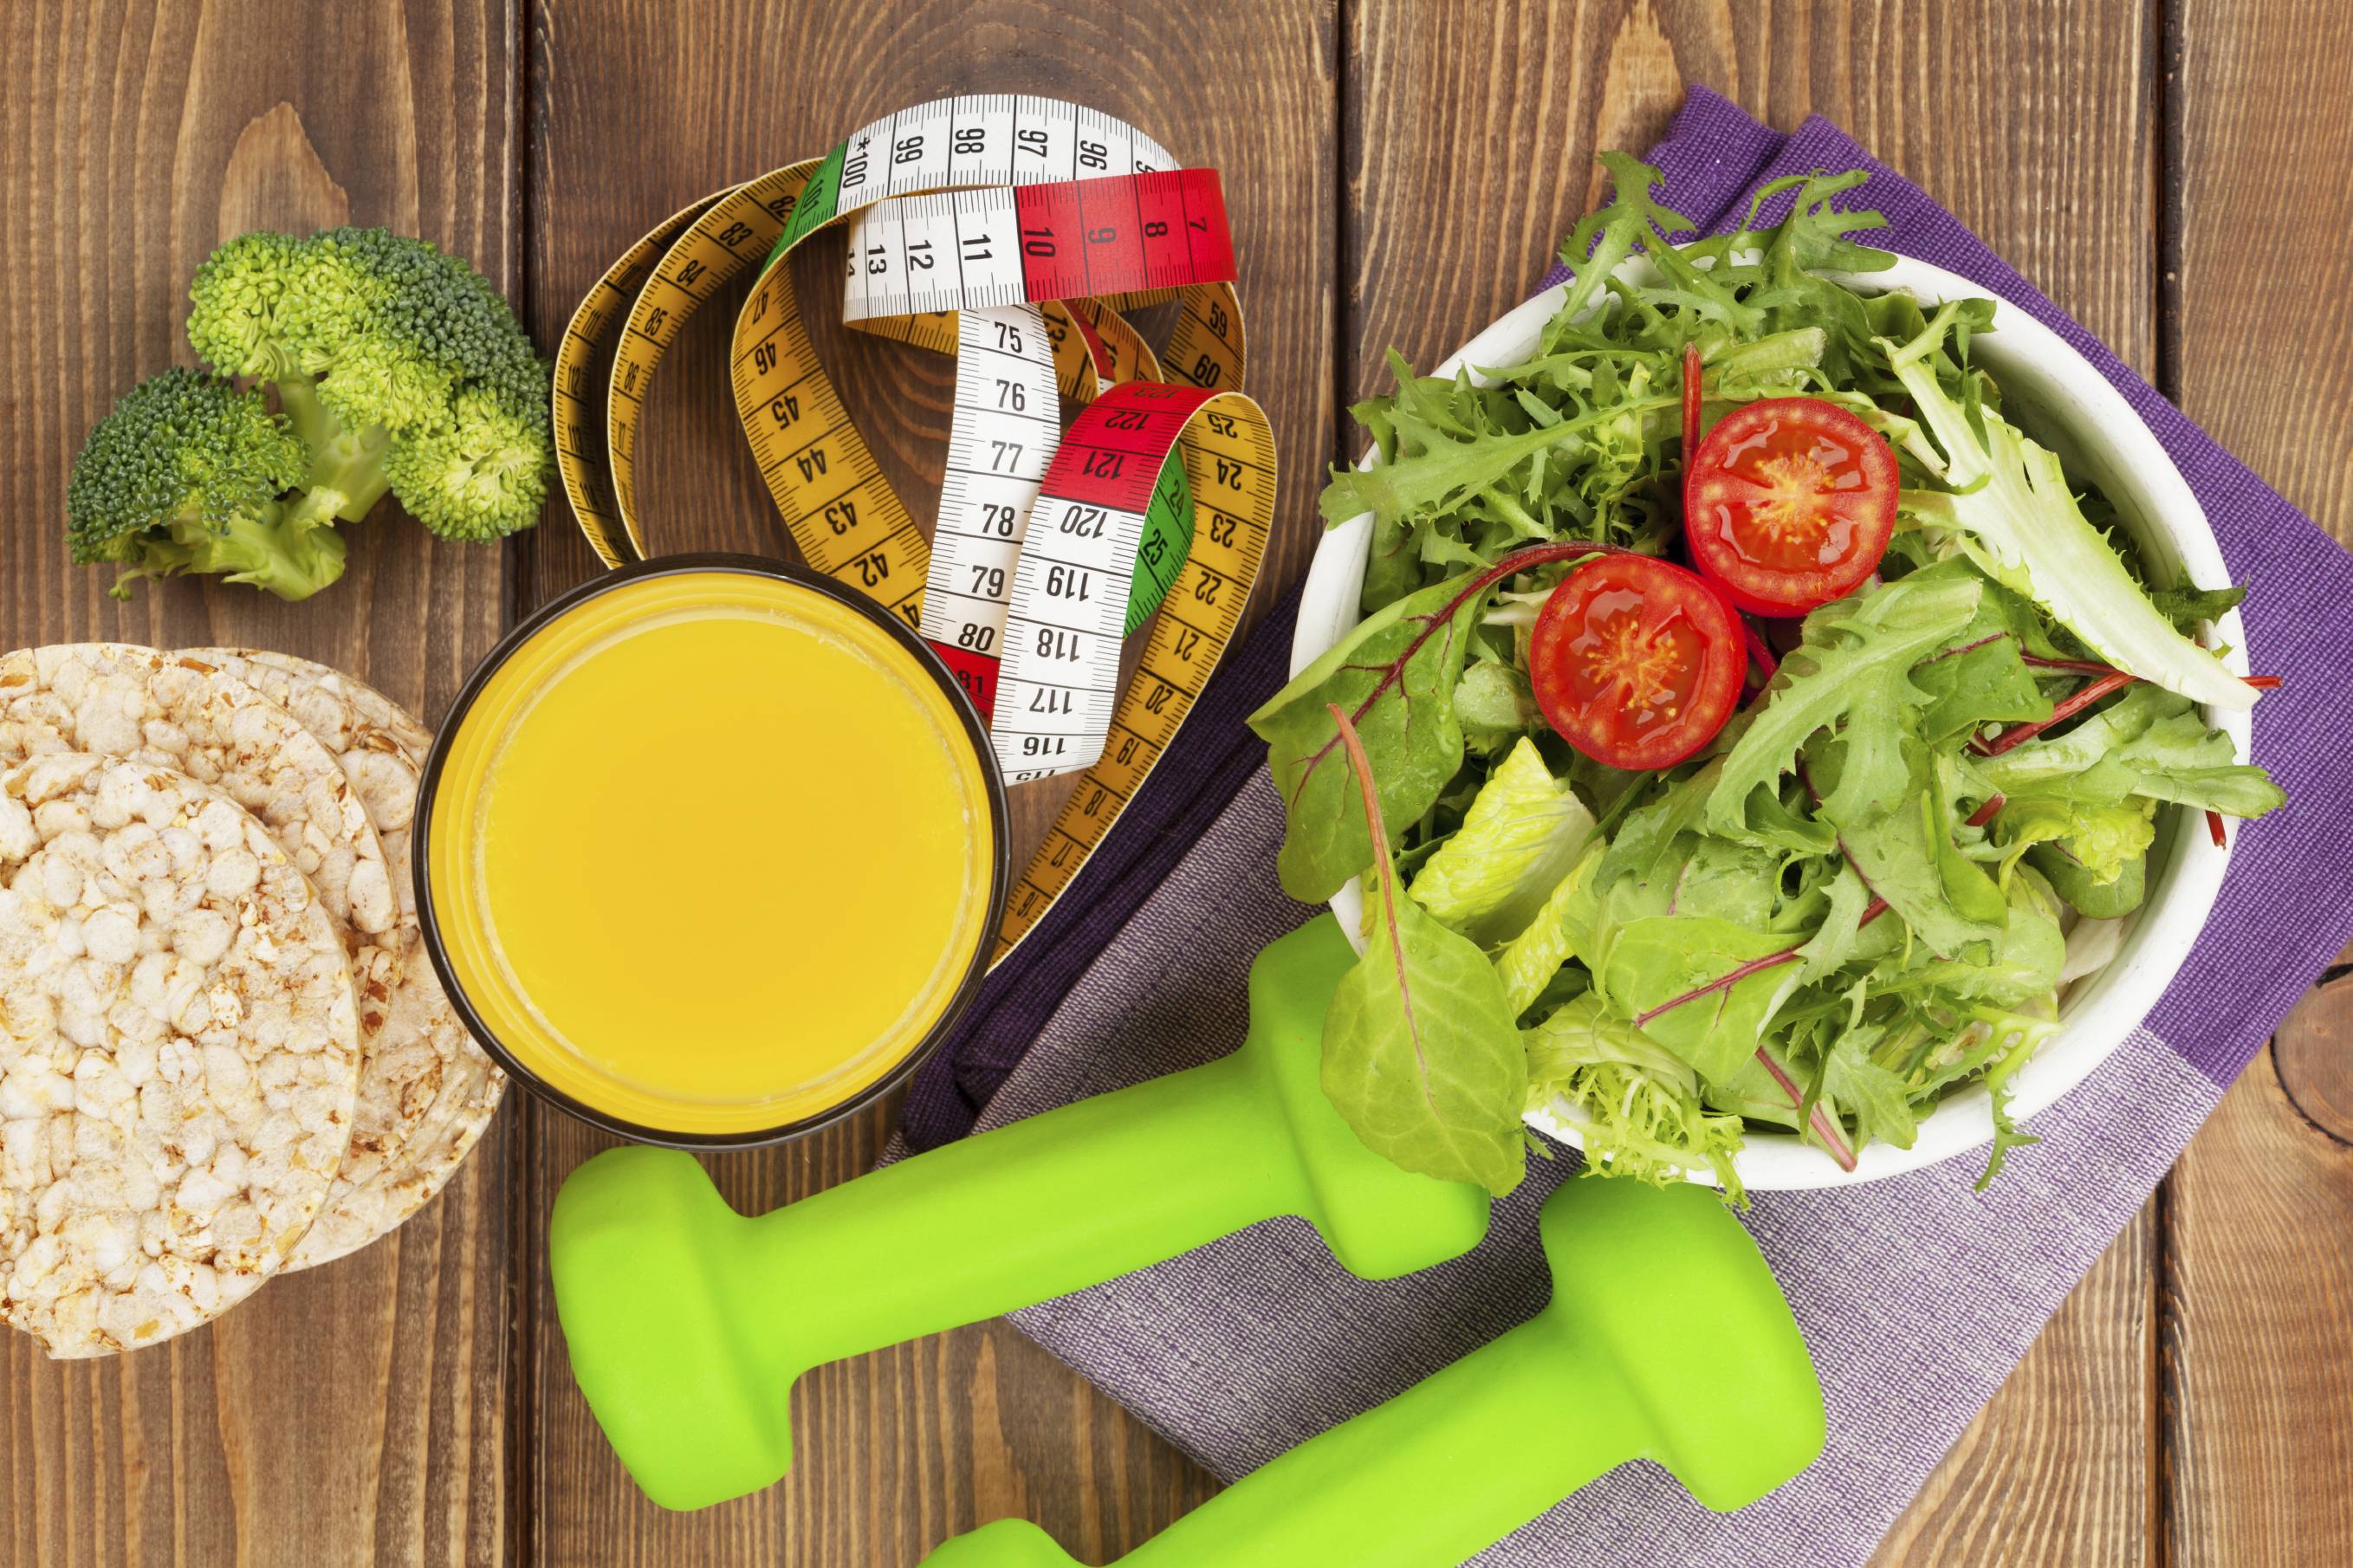 Питание перед и после тренировки: набор массы и похудение